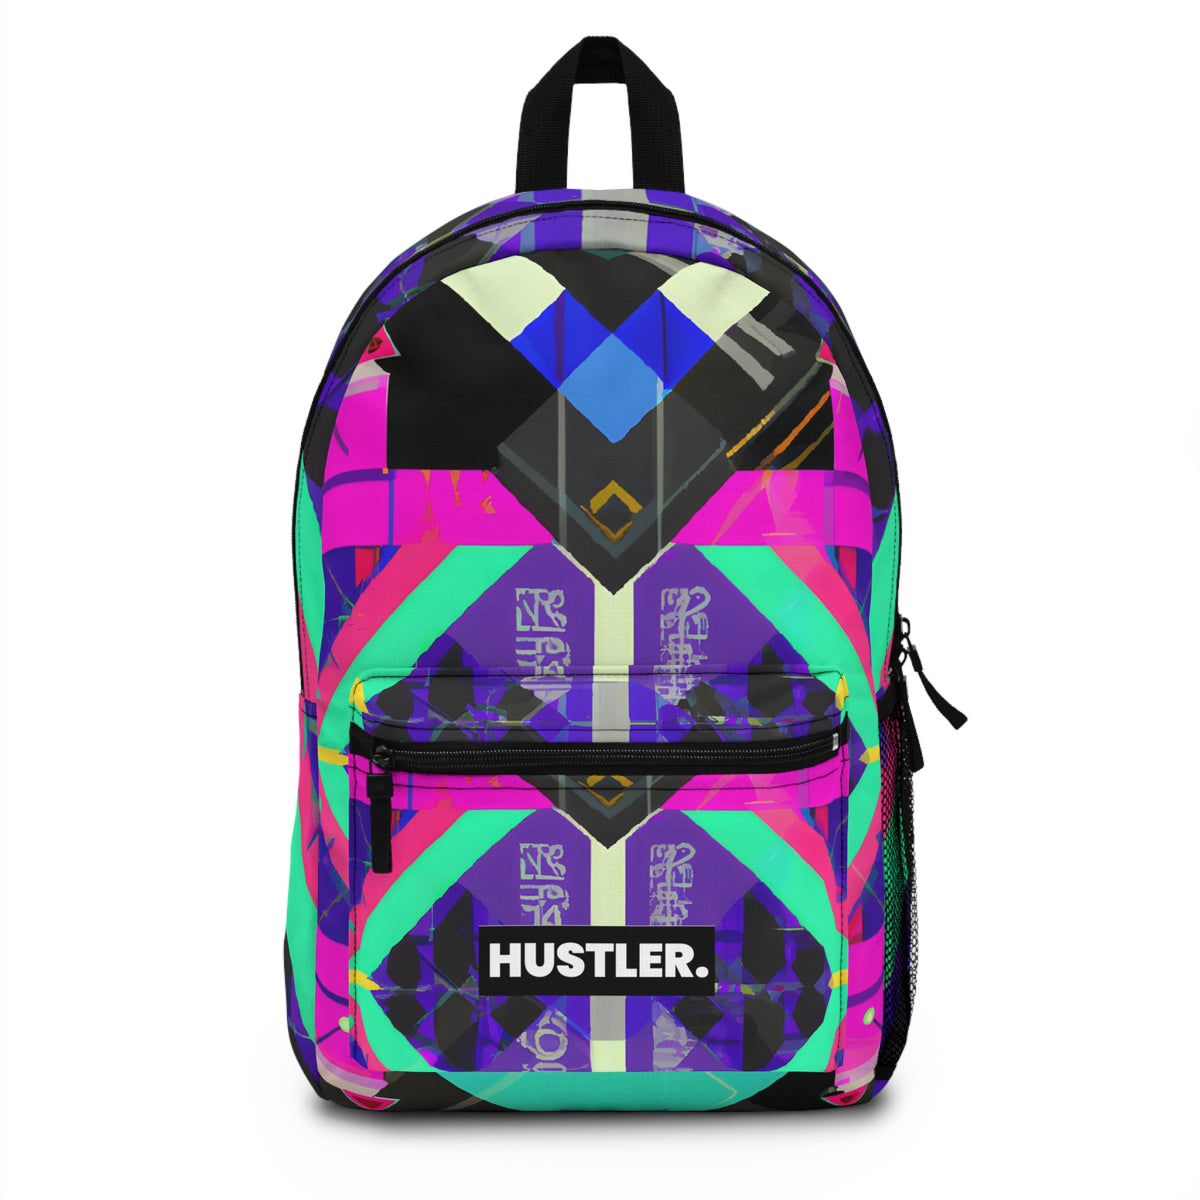 Starglitter - Hustler Backpack